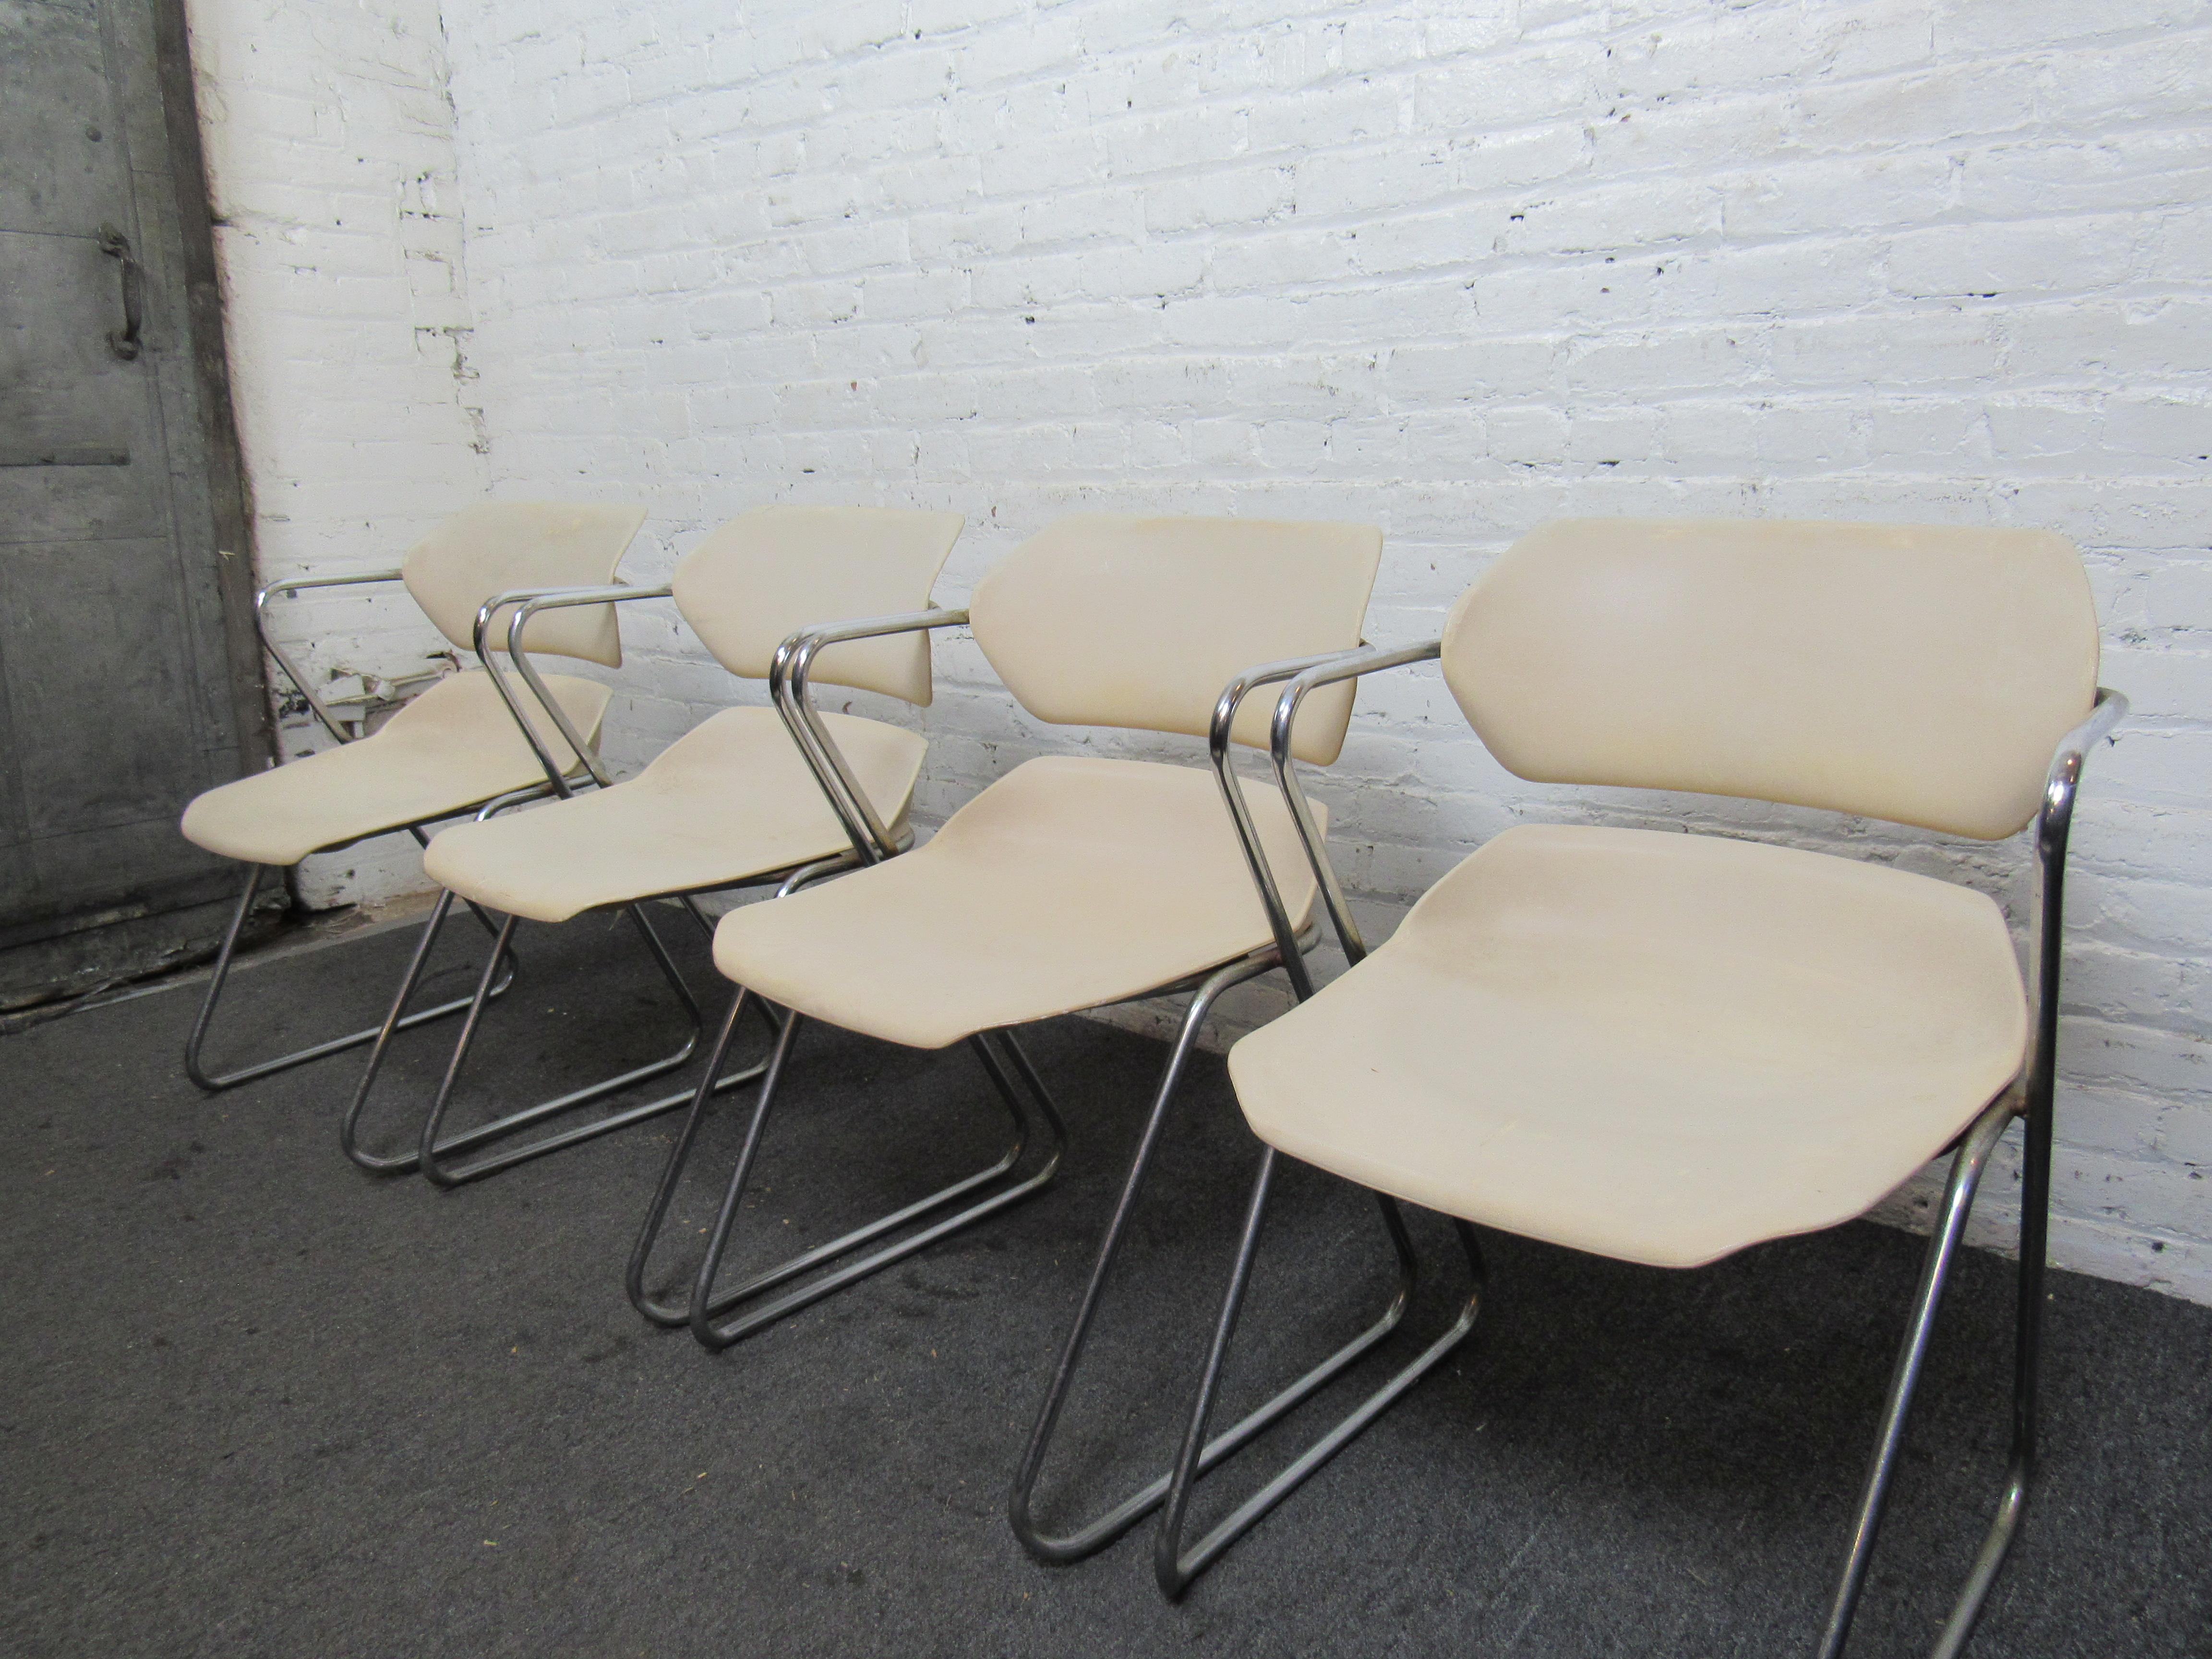 Einzigartiges Set aus vier Acton Stacker Stühlen von American Seating. Bequemes und praktisches Stuhlset für den Einsatz beim Essen, im Büro oder in der Freizeit. 
Die Stühle sind so konzipiert, dass sie leicht wippen. Leicht stapelbar für die